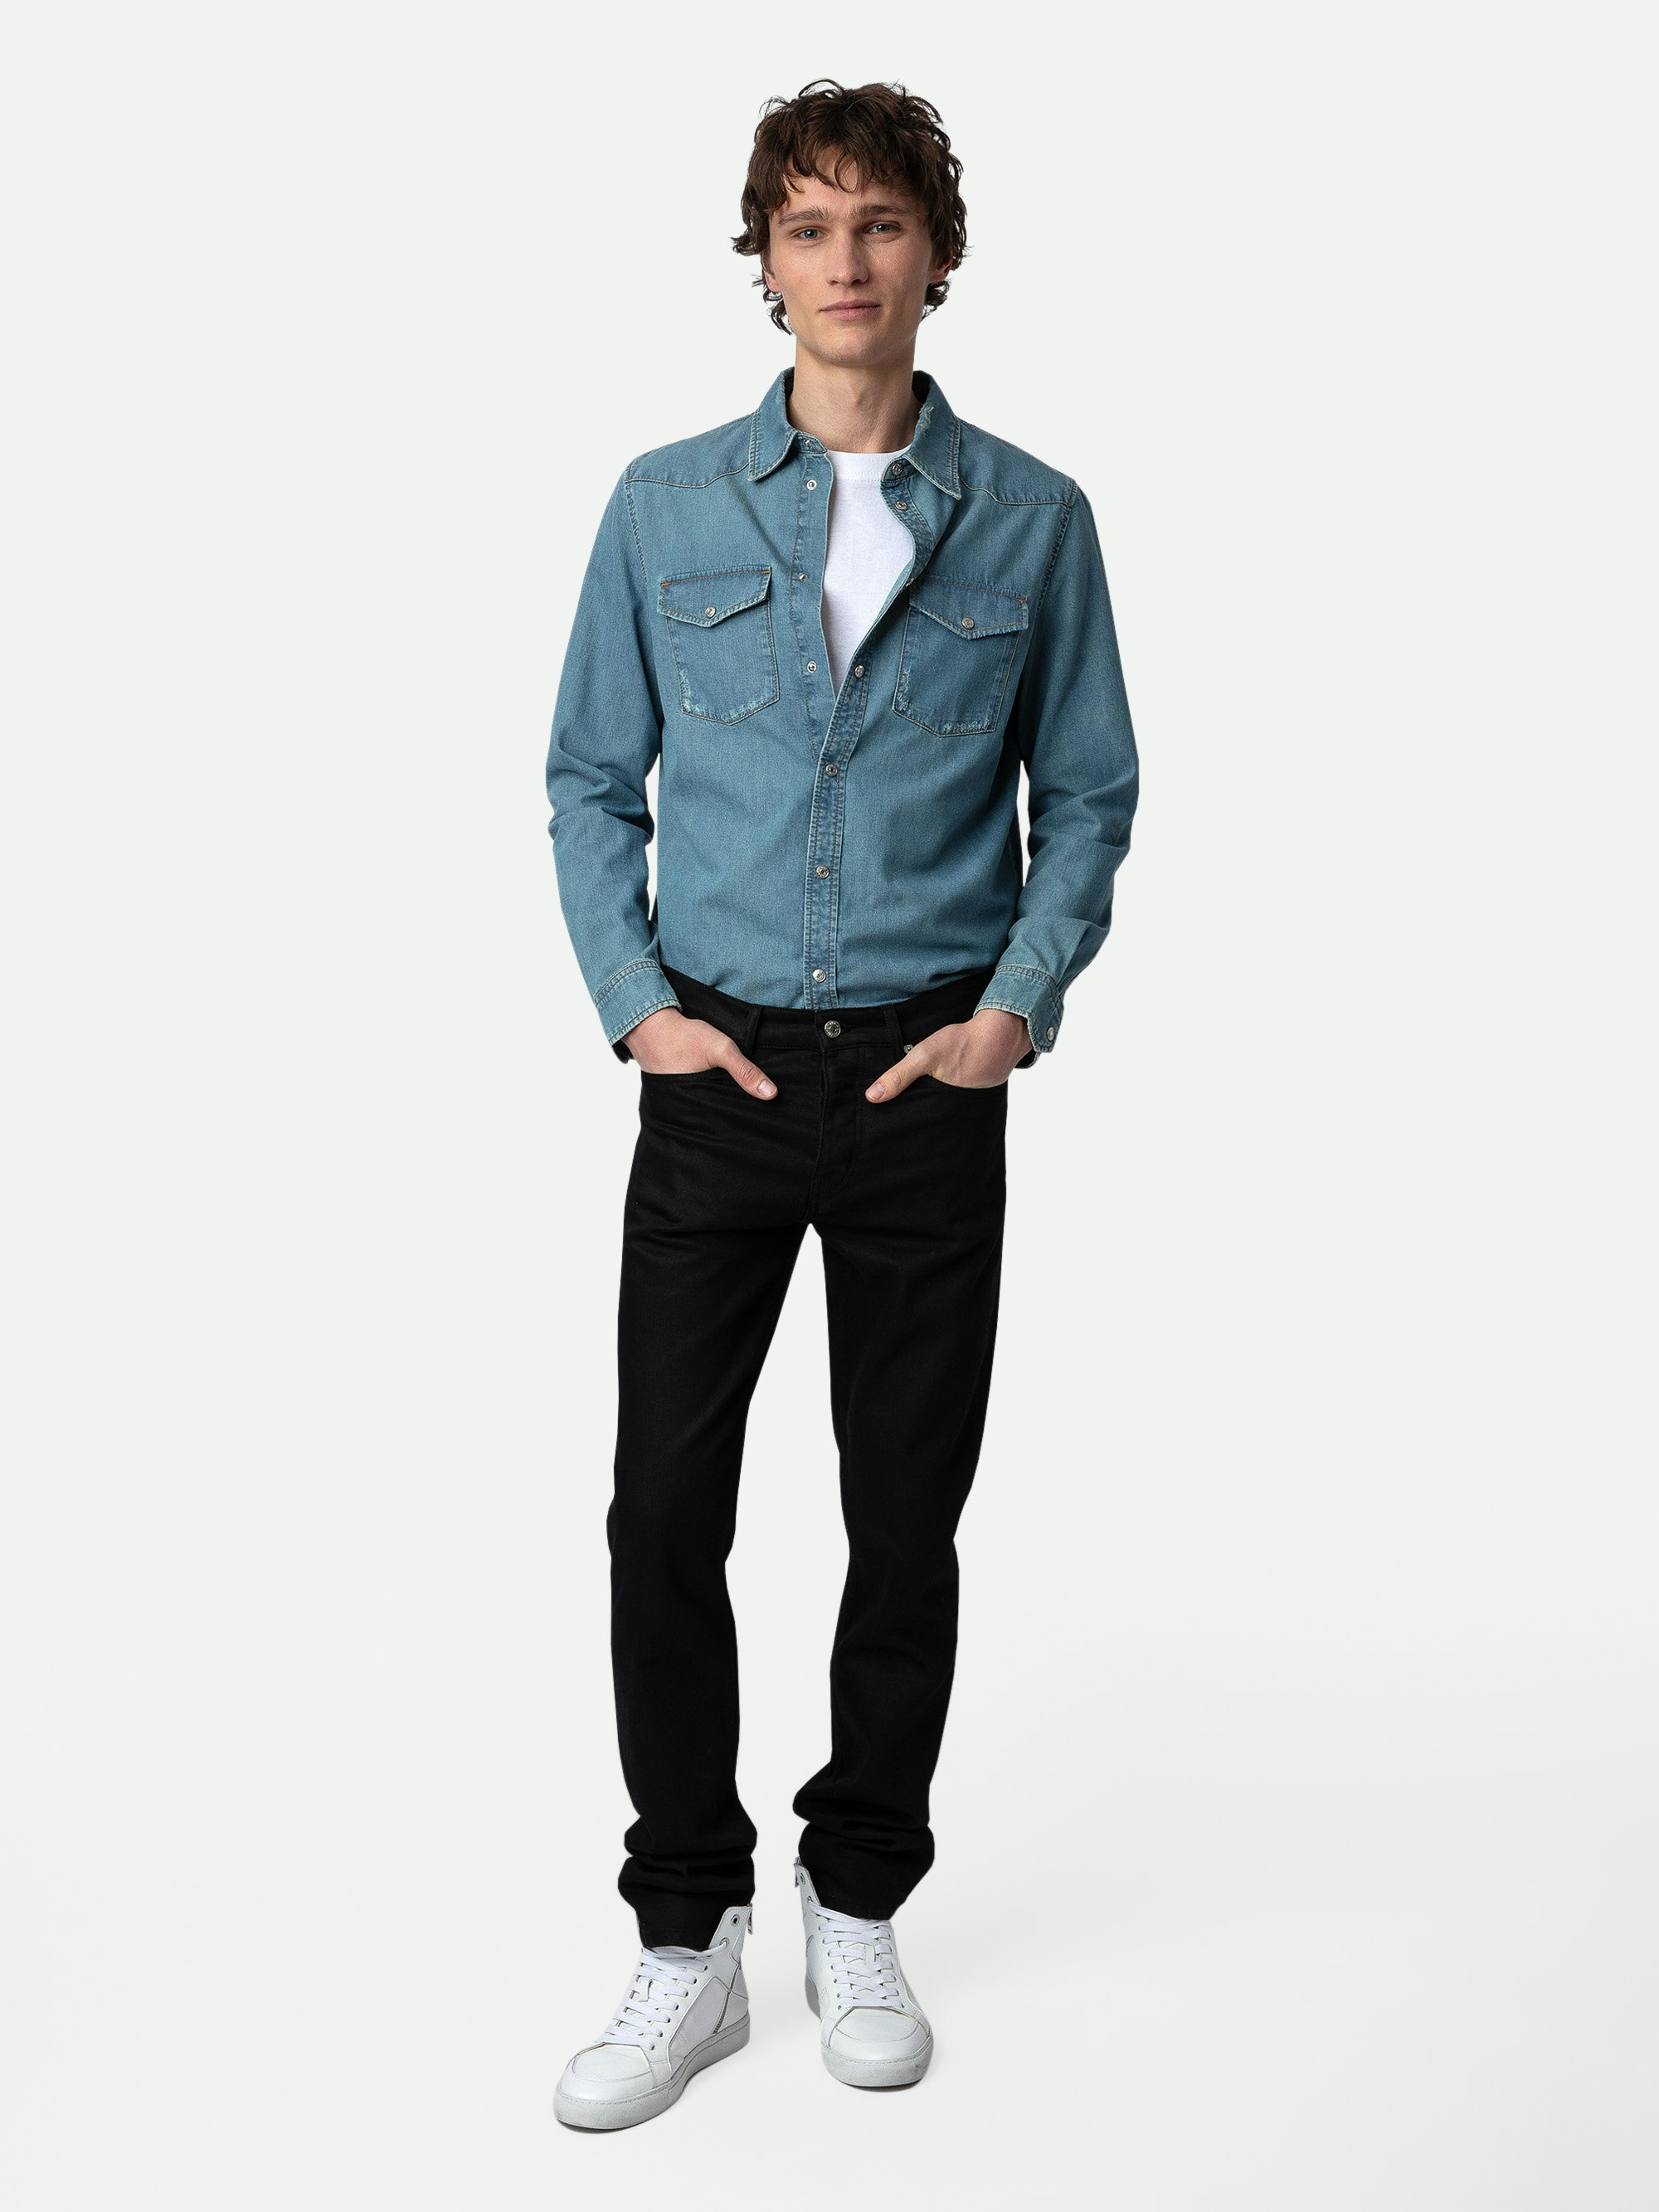 Camicia Stan Denim - Camicia in denim blu effetto usato a maniche lunghe.